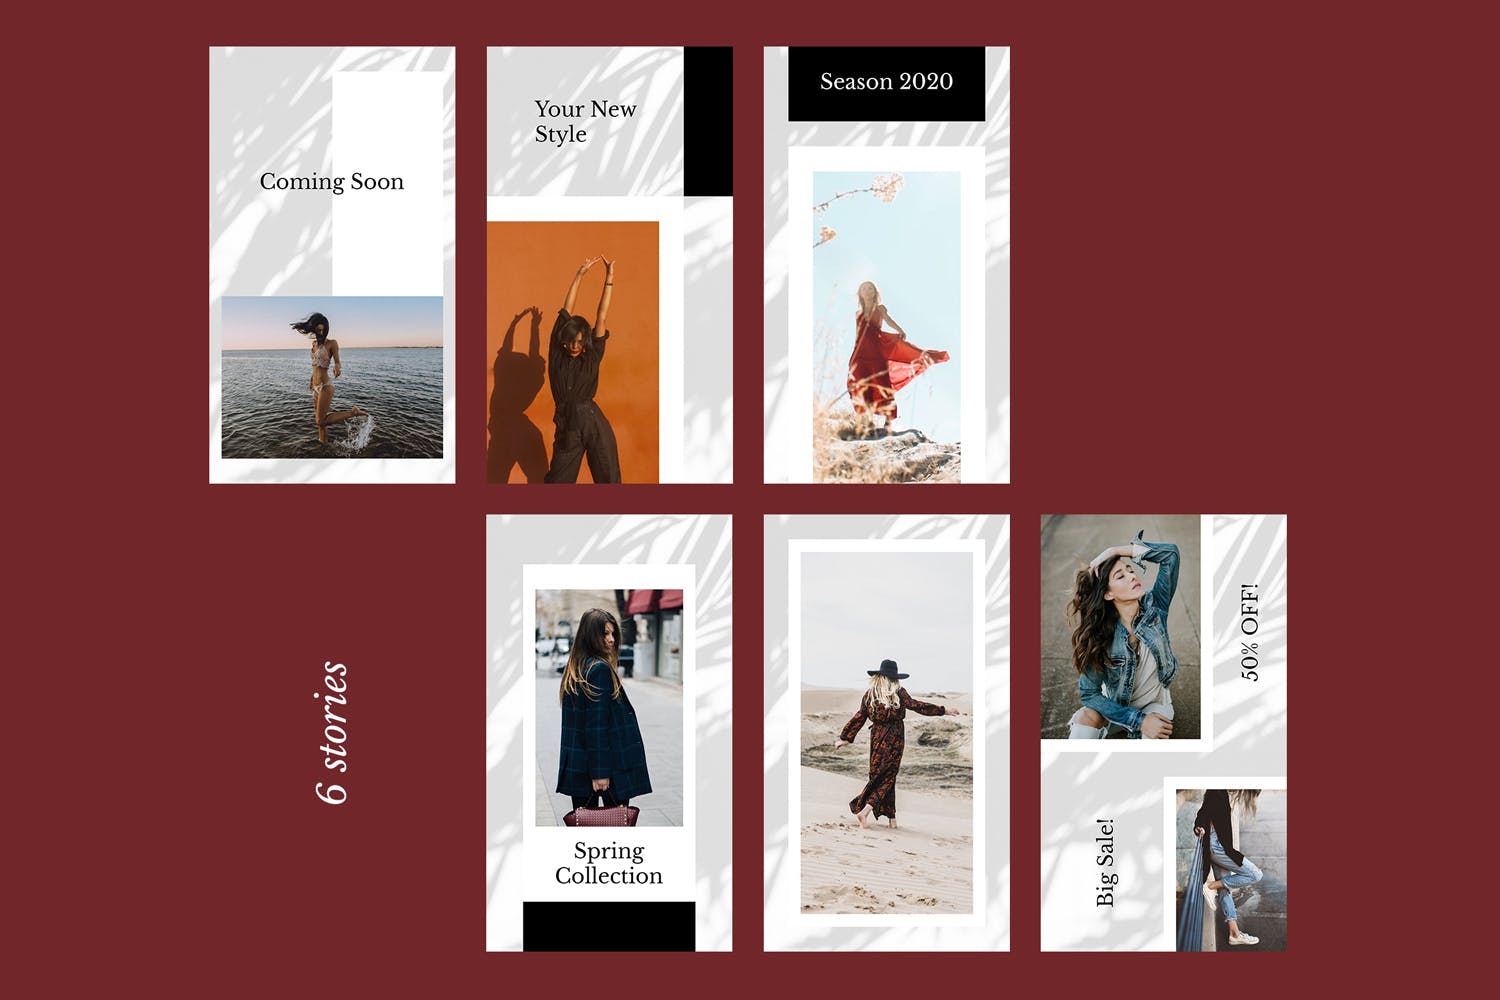 时装品牌产品展示Instagram社交贴图设计模板非凡图库精选v52 Instagram Stories Kit (Vol.52)插图(1)